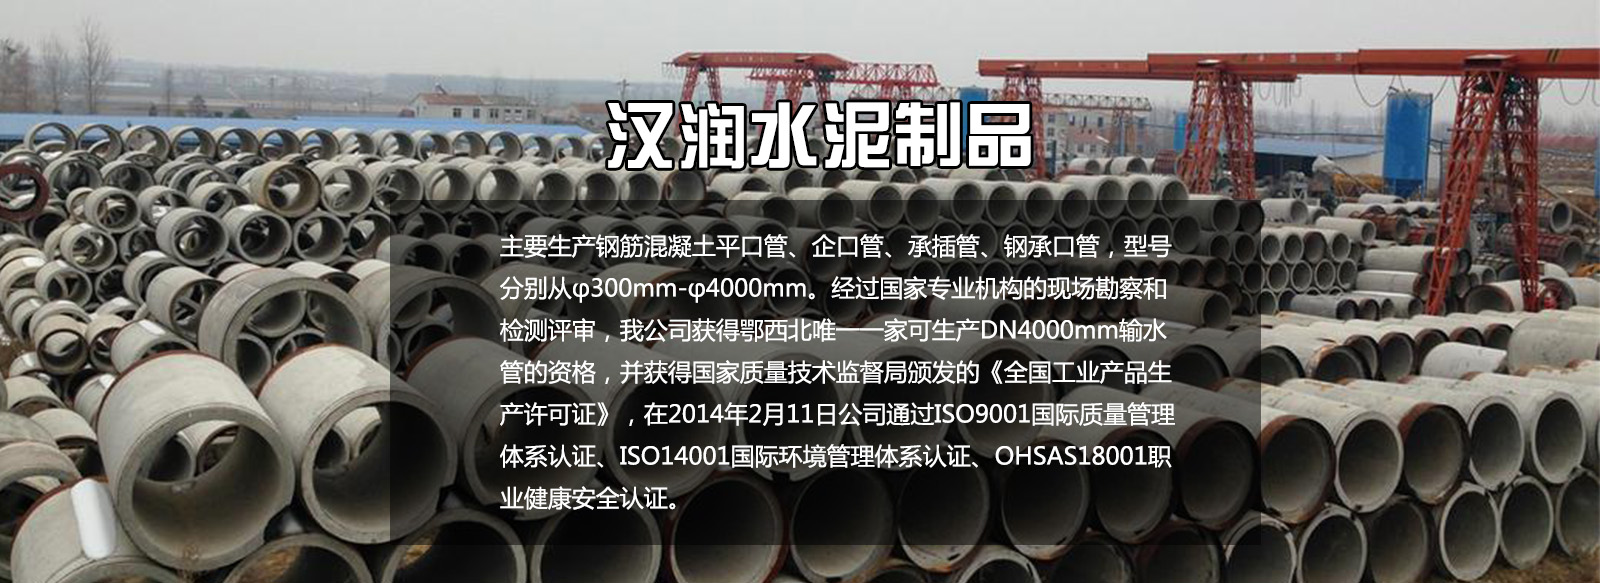 武汉水泥管产品质量保证与售后承诺